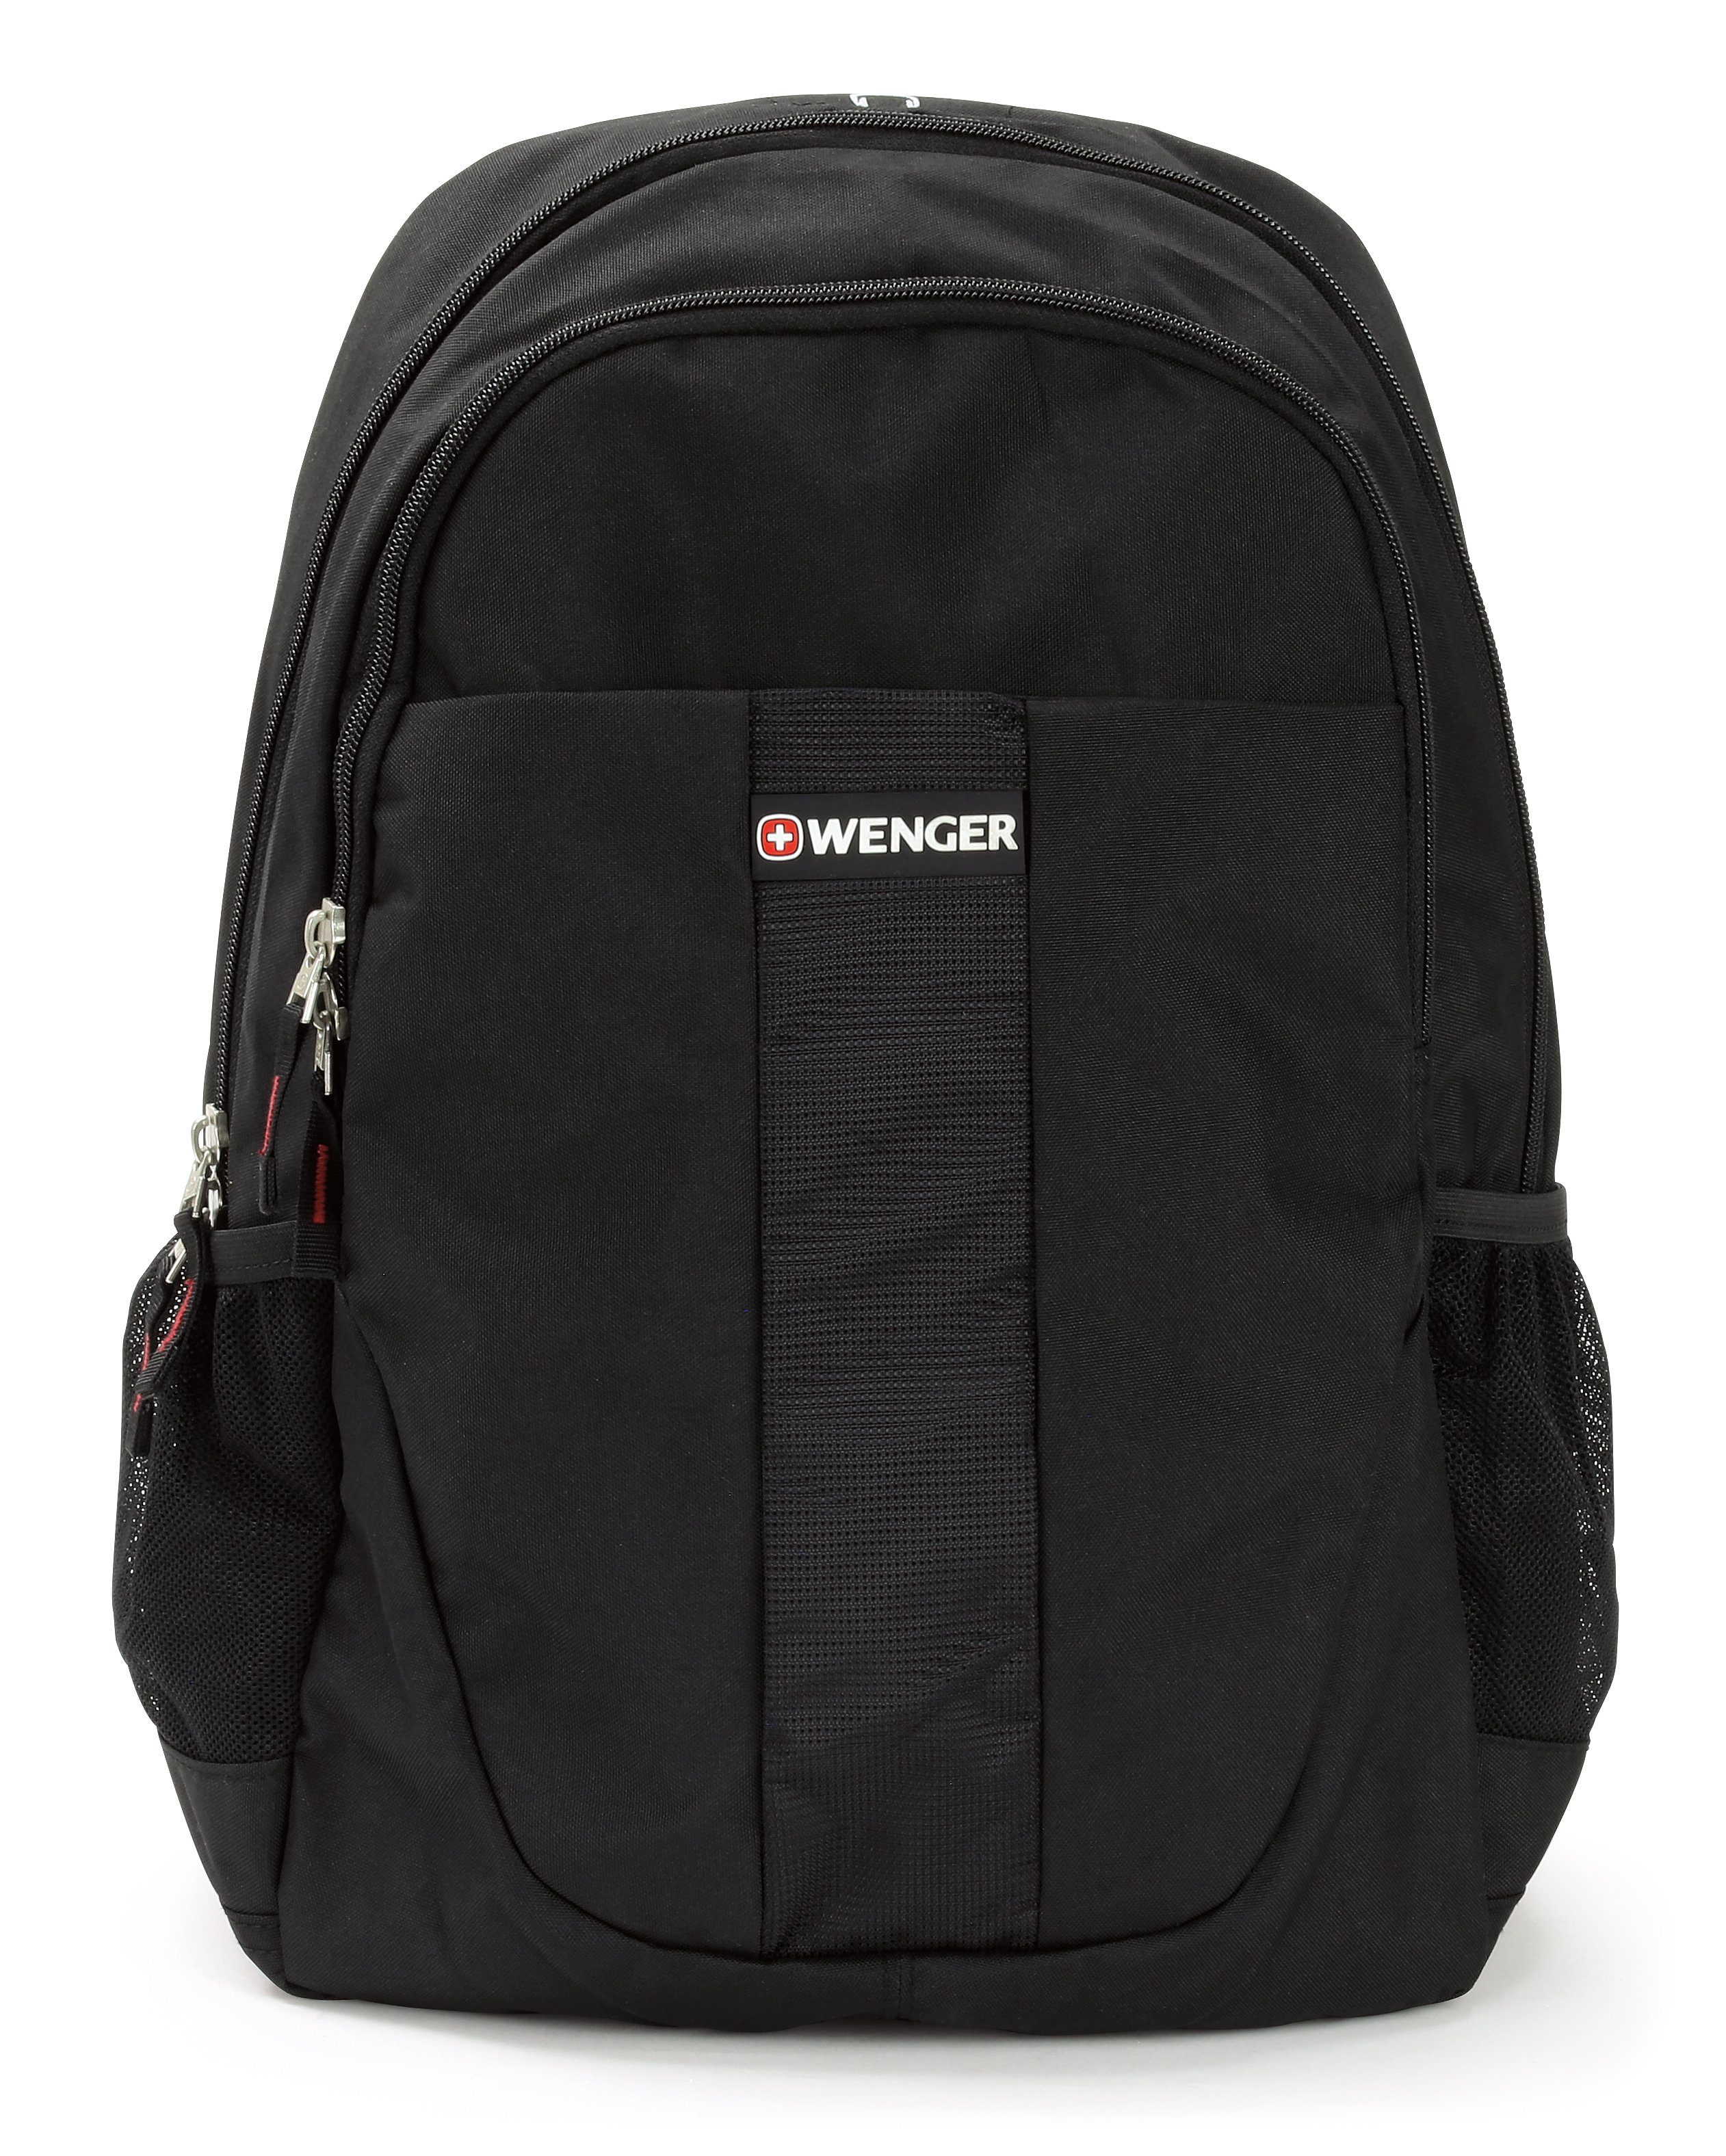 Wenger Rucksack Daypack, Businessrucksack, Freizeitrucksack, Damen und  Herren, Polyester, Maße 45cm x 35cm, schwarz